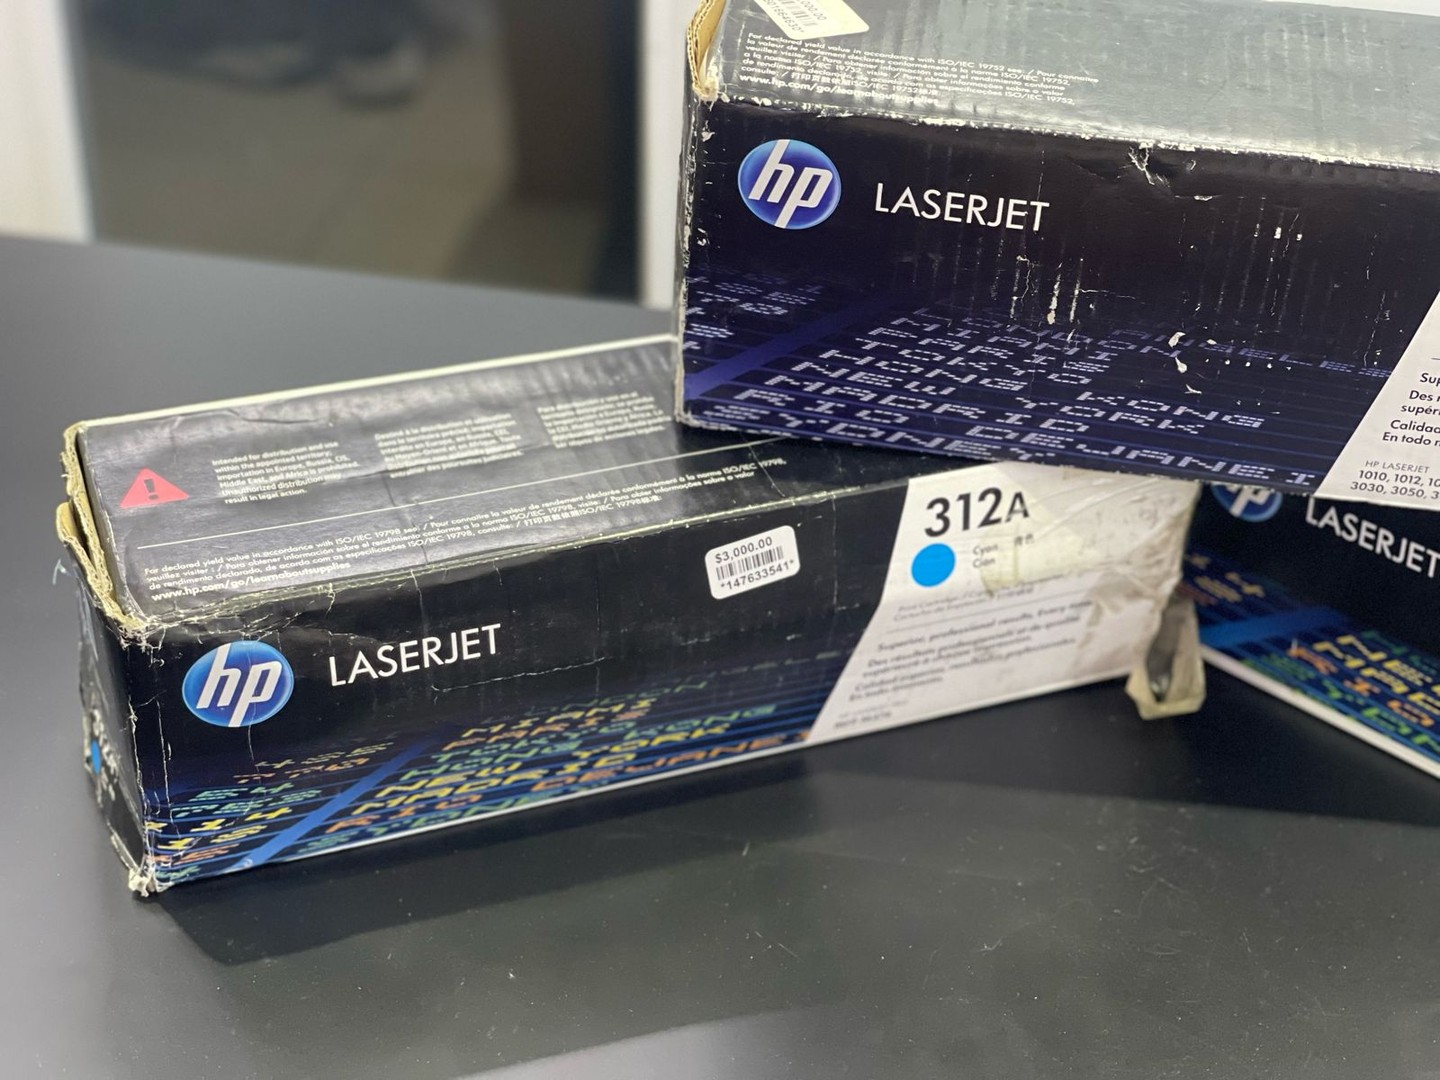 impresoras y scanners - Toner HP Laserjet 312A 206X Azul  4